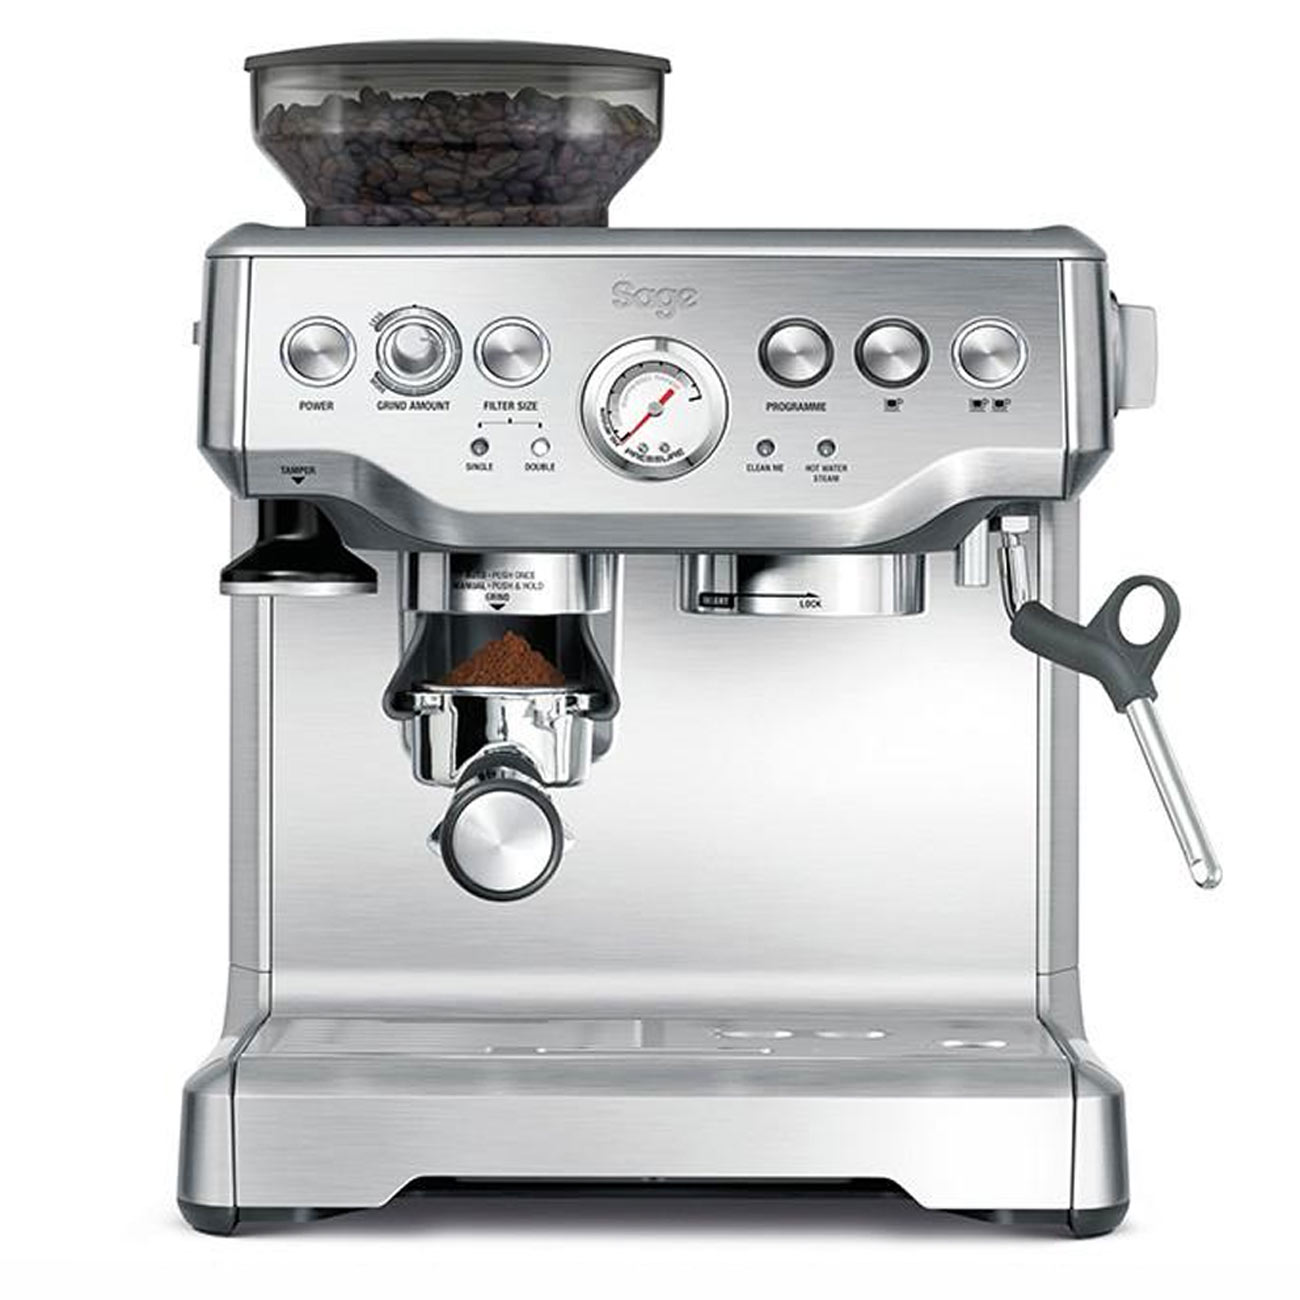 Espresso Americano - Disfruta #espressoencasa con nuestra Máquina de café  Passione + 2 cajas de House Blend por L. 850 . . Haz tu pedido al 9430-5764  . *Entregas días: lunes, miércoles